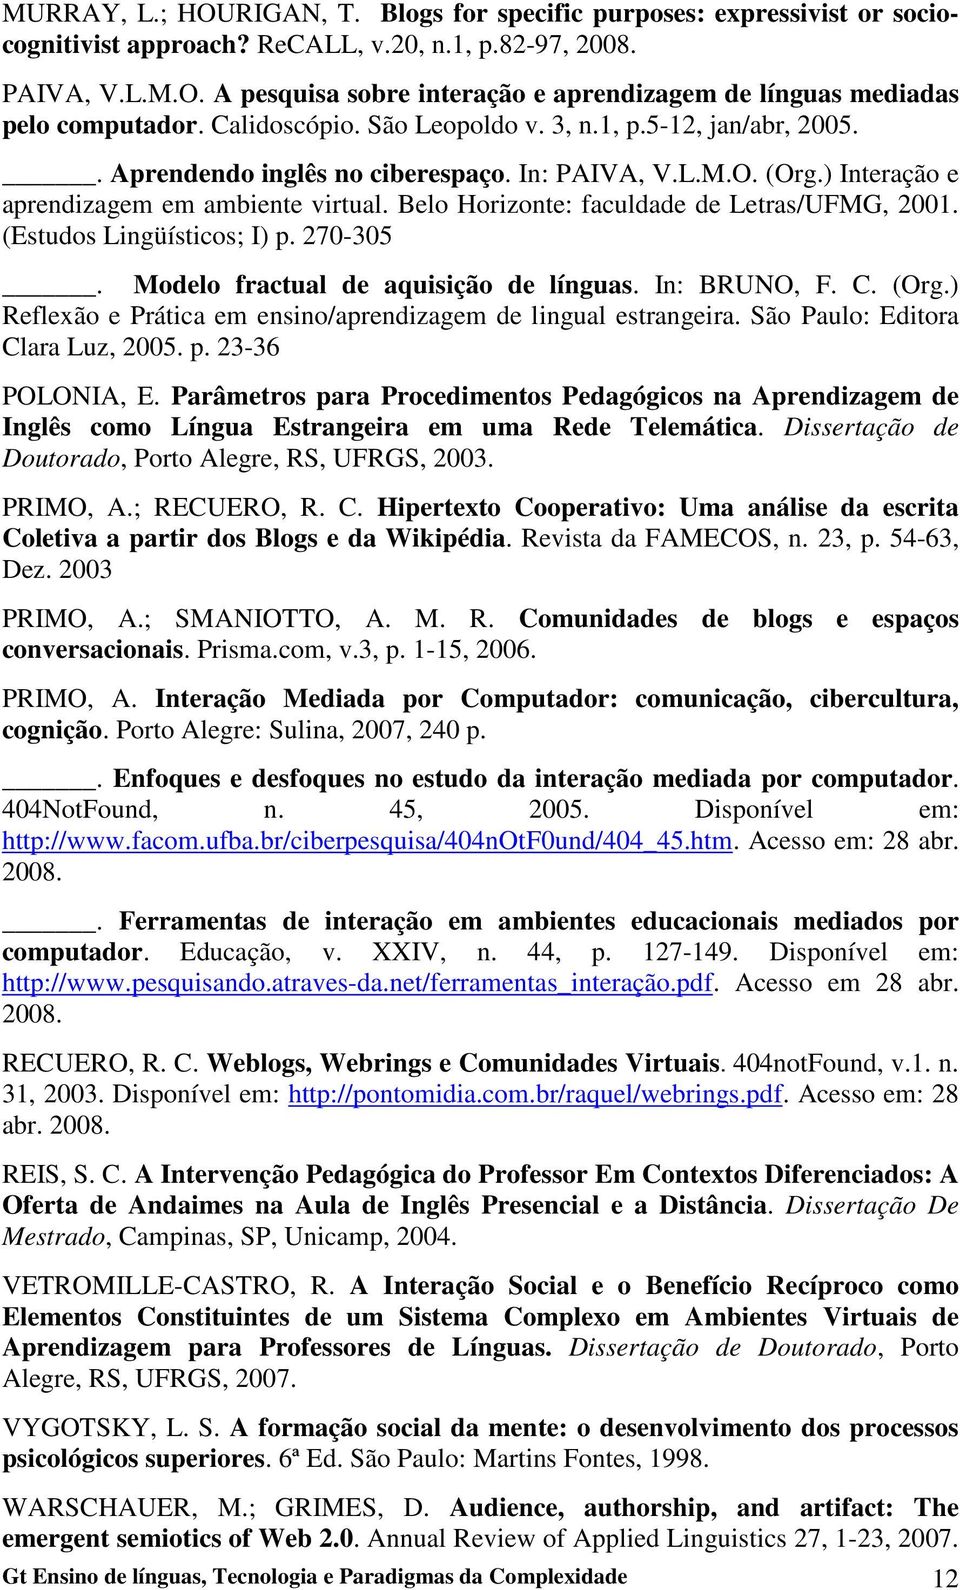 Belo Horizonte: faculdade de Letras/UFMG, 2001. (Estudos Lingüísticos; I) p. 270-305. Modelo fractual de aquisição de línguas. In: BRUNO, F. C. (Org.